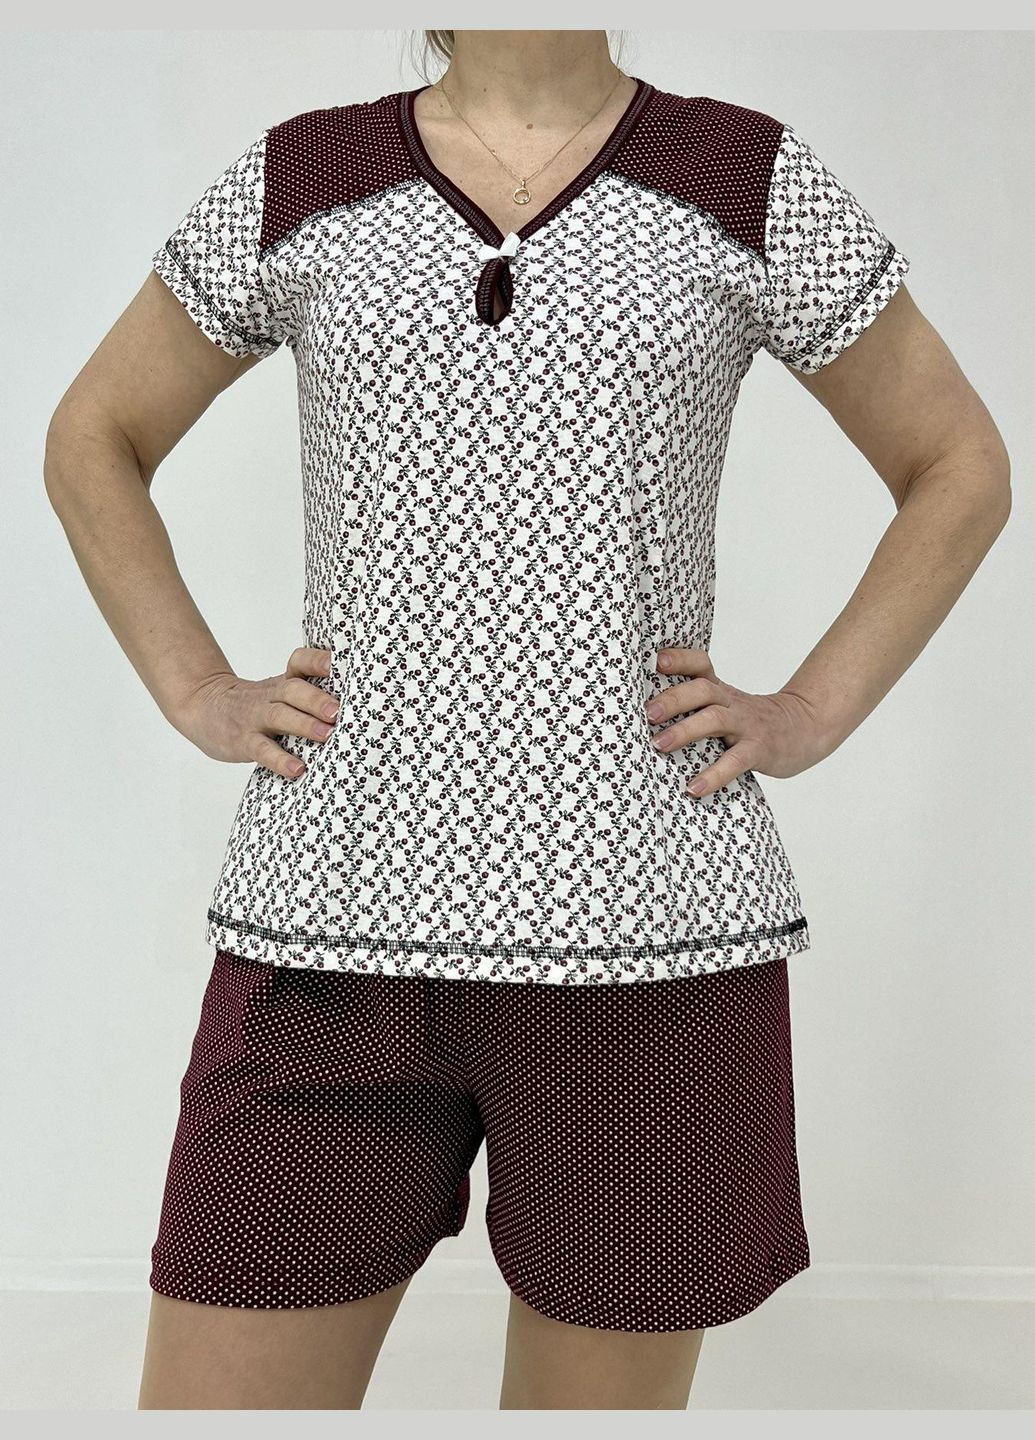 Бордова всесезон домашній жіночий комплект зоя (футболка + шорти) 58-60 бордо-беж 42030055-3 Triko